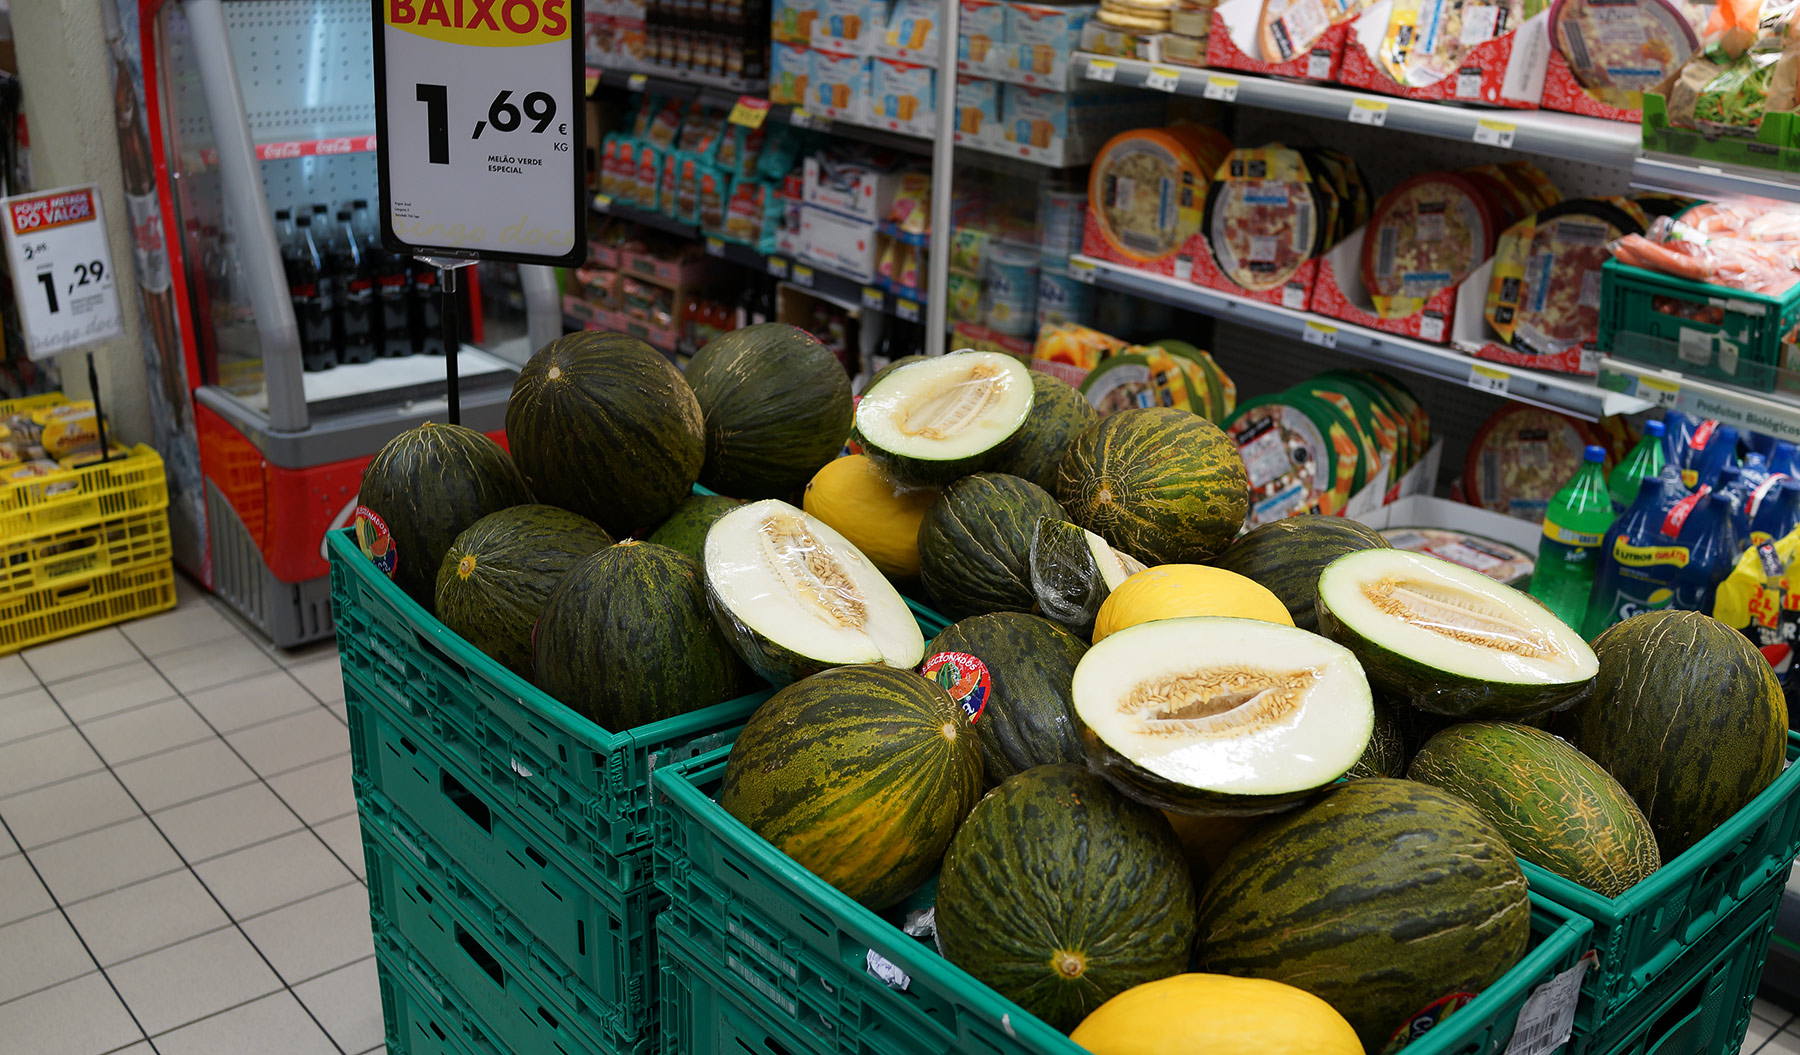 Цены в португальском супермаркете. Насколько выше/ниже российских? DSC02589